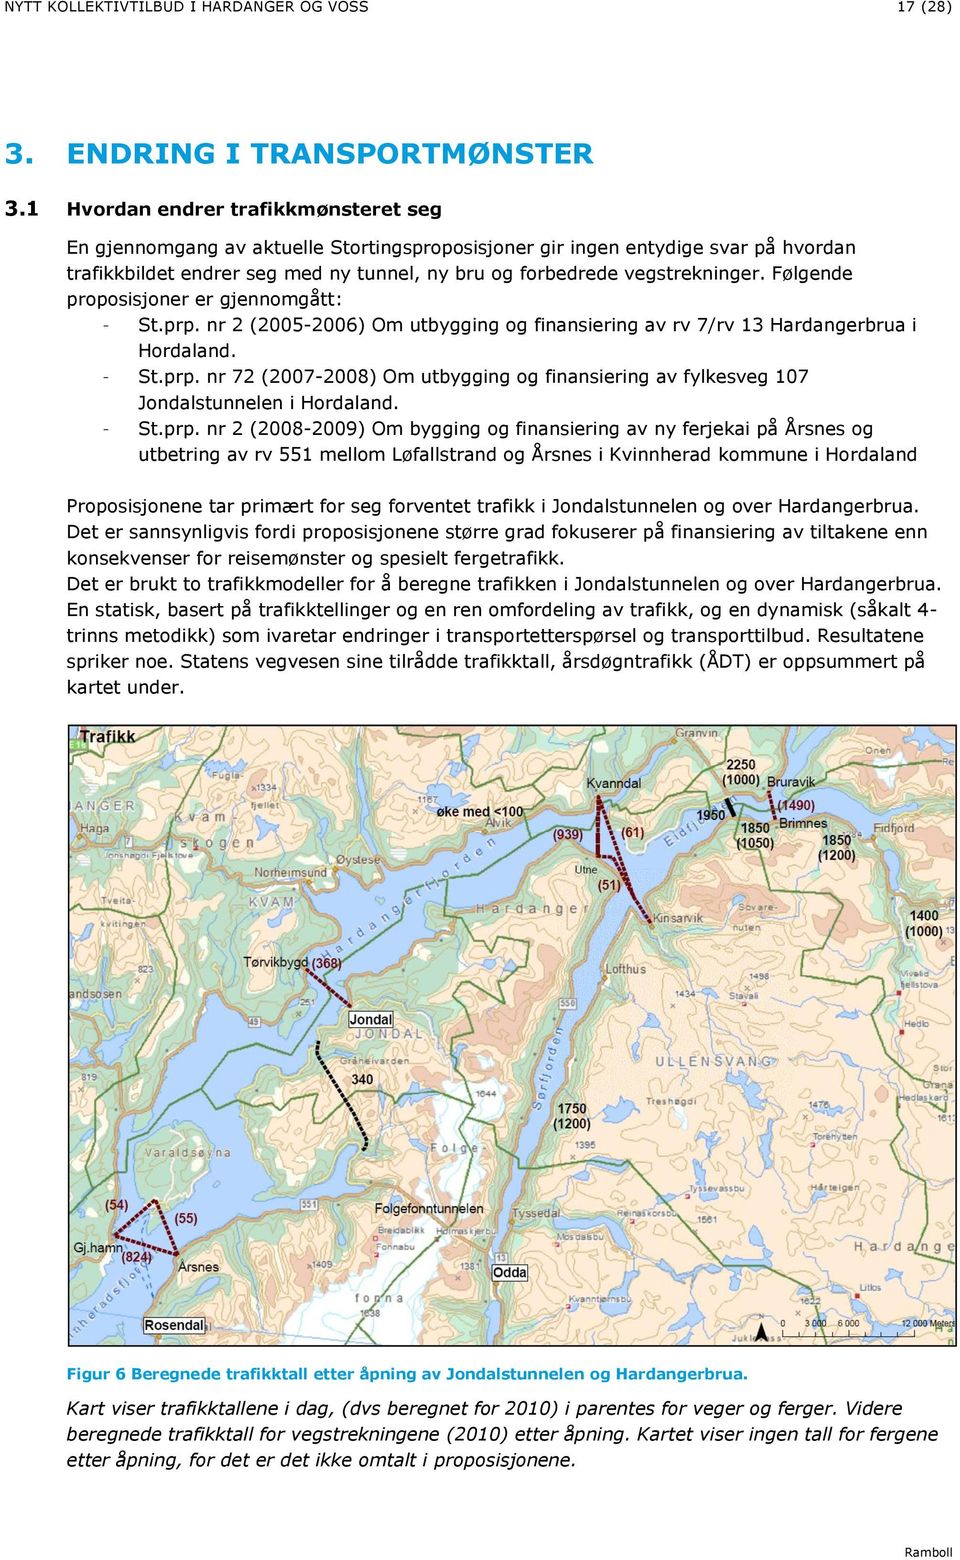 Følgende proposisjoner er gjennomgått: - St.prp. nr 2 (2005-2006) Om utbygging og finansiering av rv 7/rv 13 Hardangerbrua i Hordaland. - St.prp. nr 72 (2007-2008) Om utbygging og finansiering av fylkesveg 107 Jondalstunnelen i Hordaland.